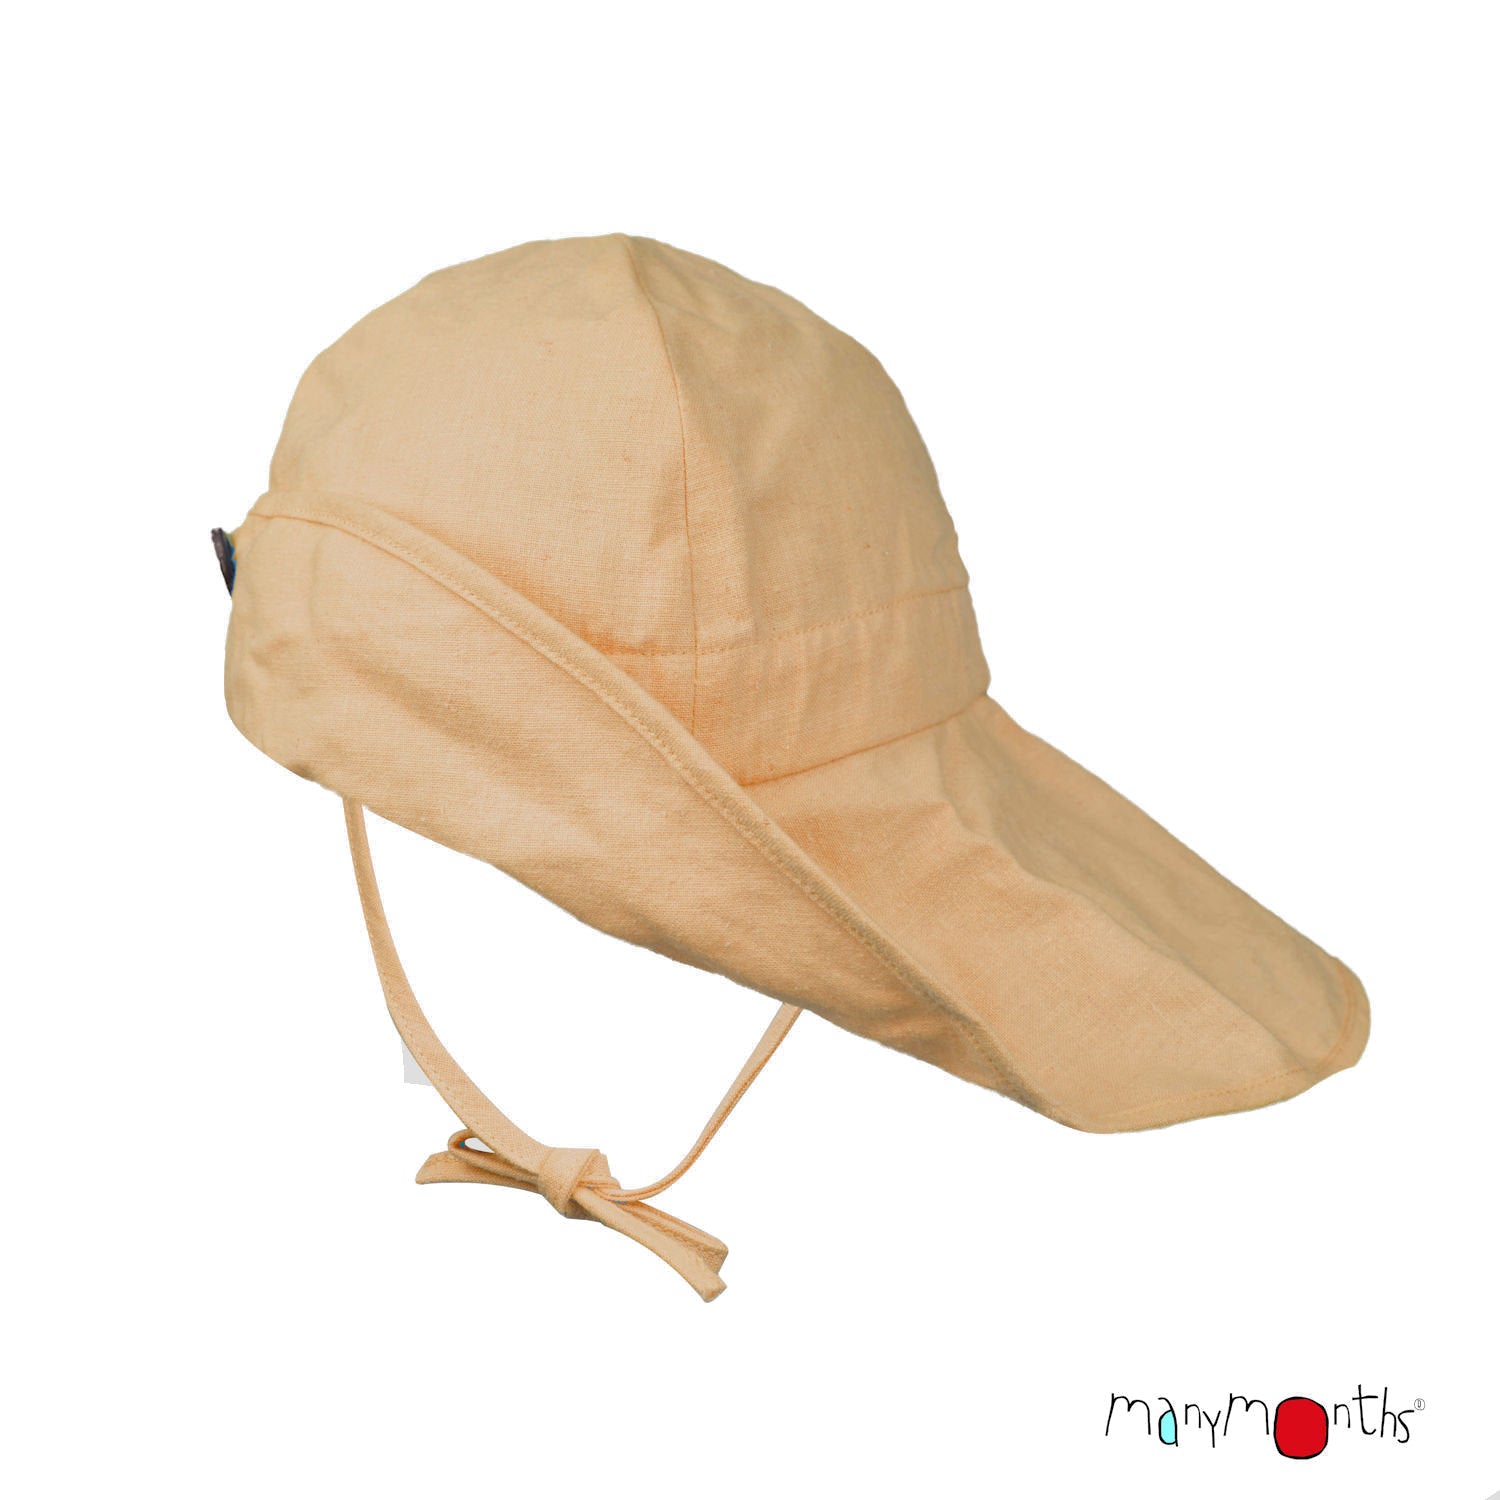 ManyMonths Summer Hat Light Hanf (Mütze) - Golden Straw - Familienbande